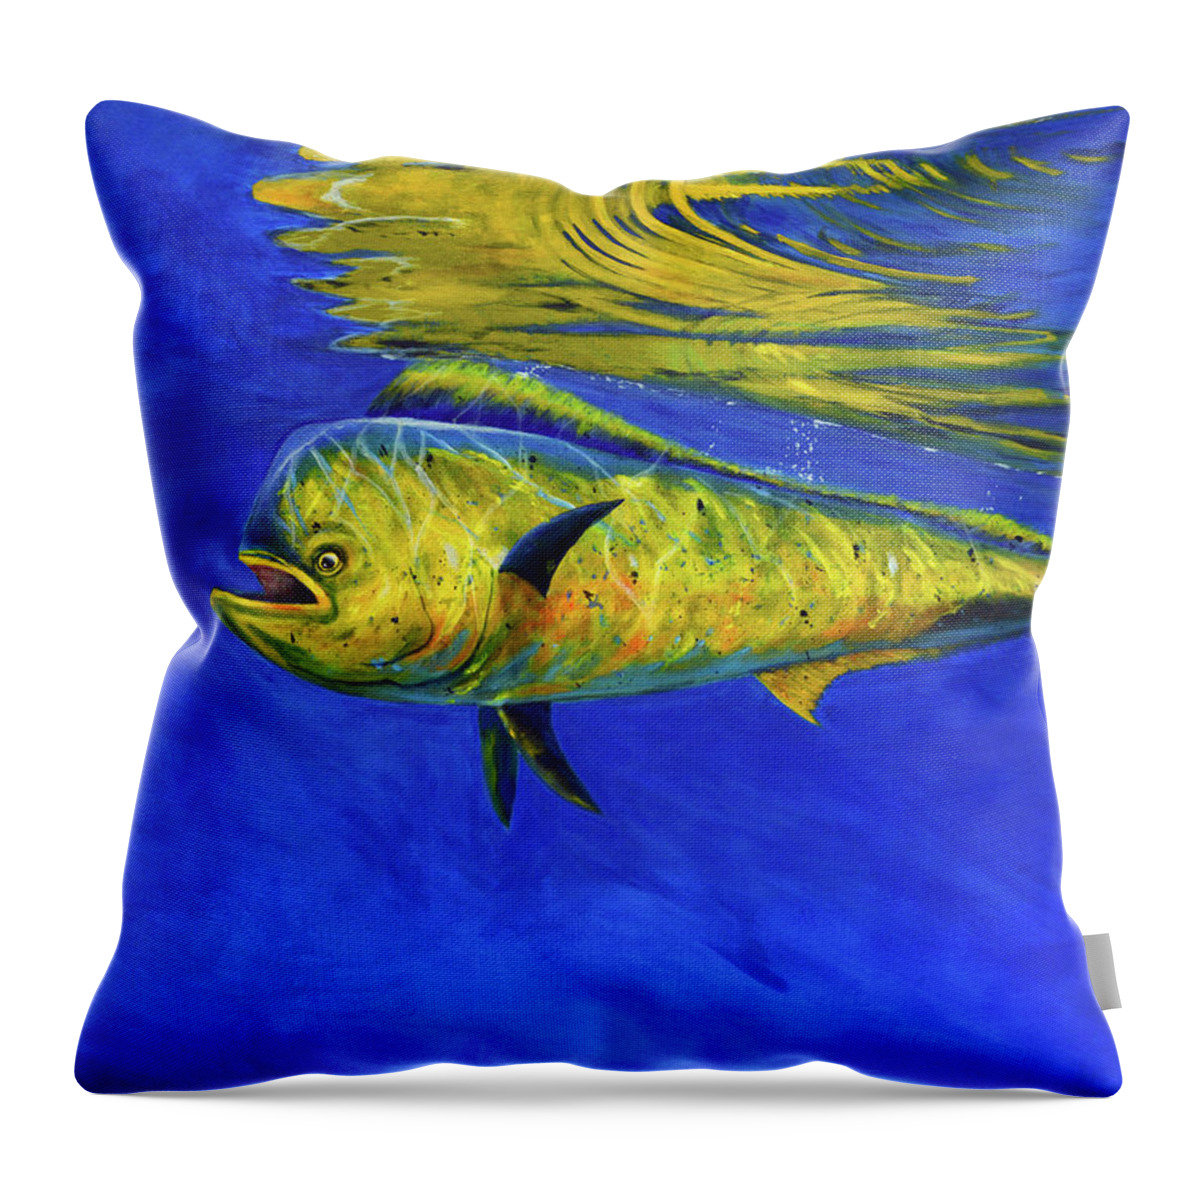 Mahi Mahi Throw Pillow featuring the painting Mahi Mahi Fish by Donna Tucker